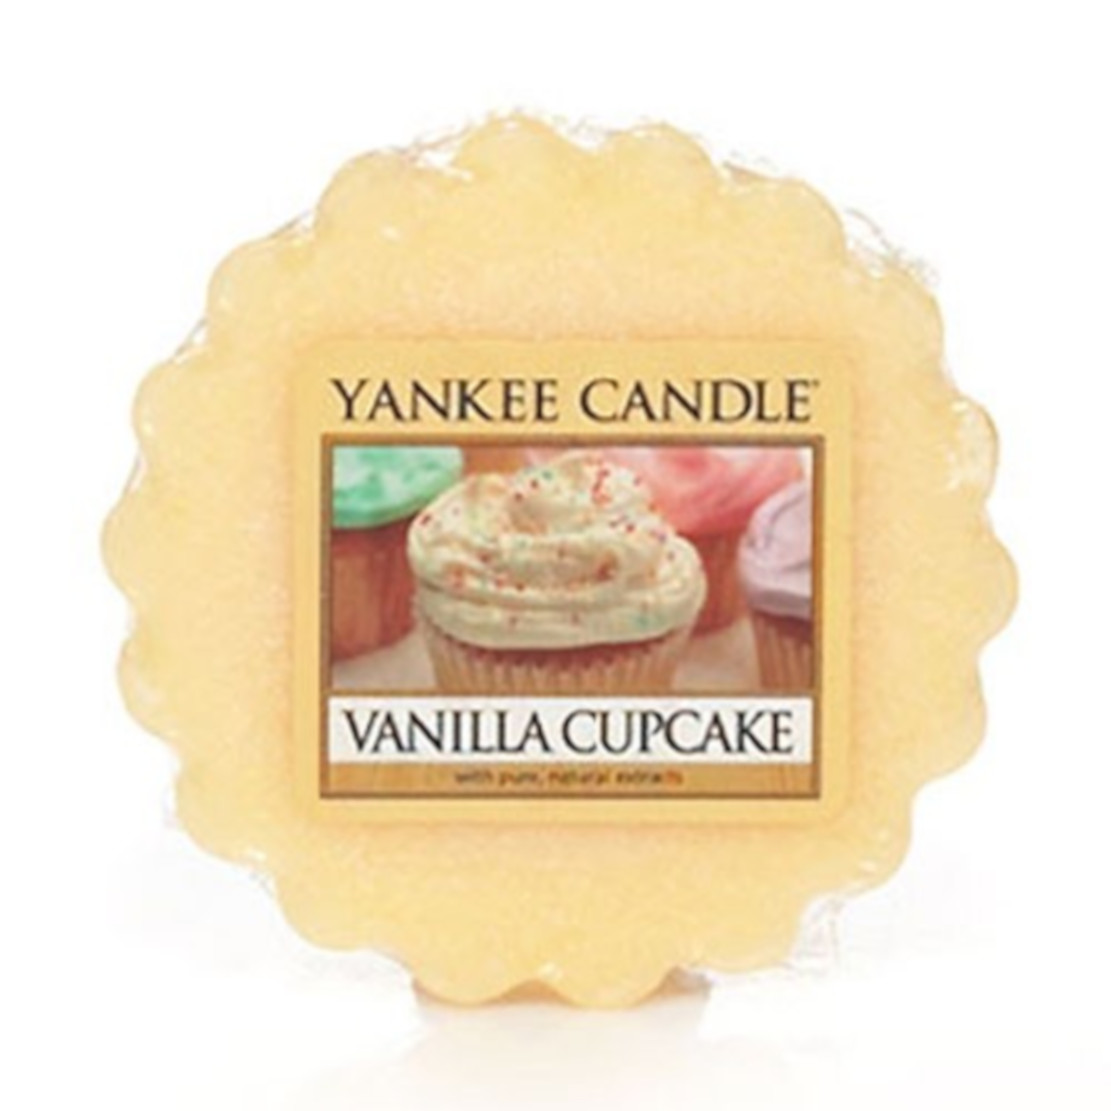 Yankee Candle Vanilla Cupcake Wax Melt Tart